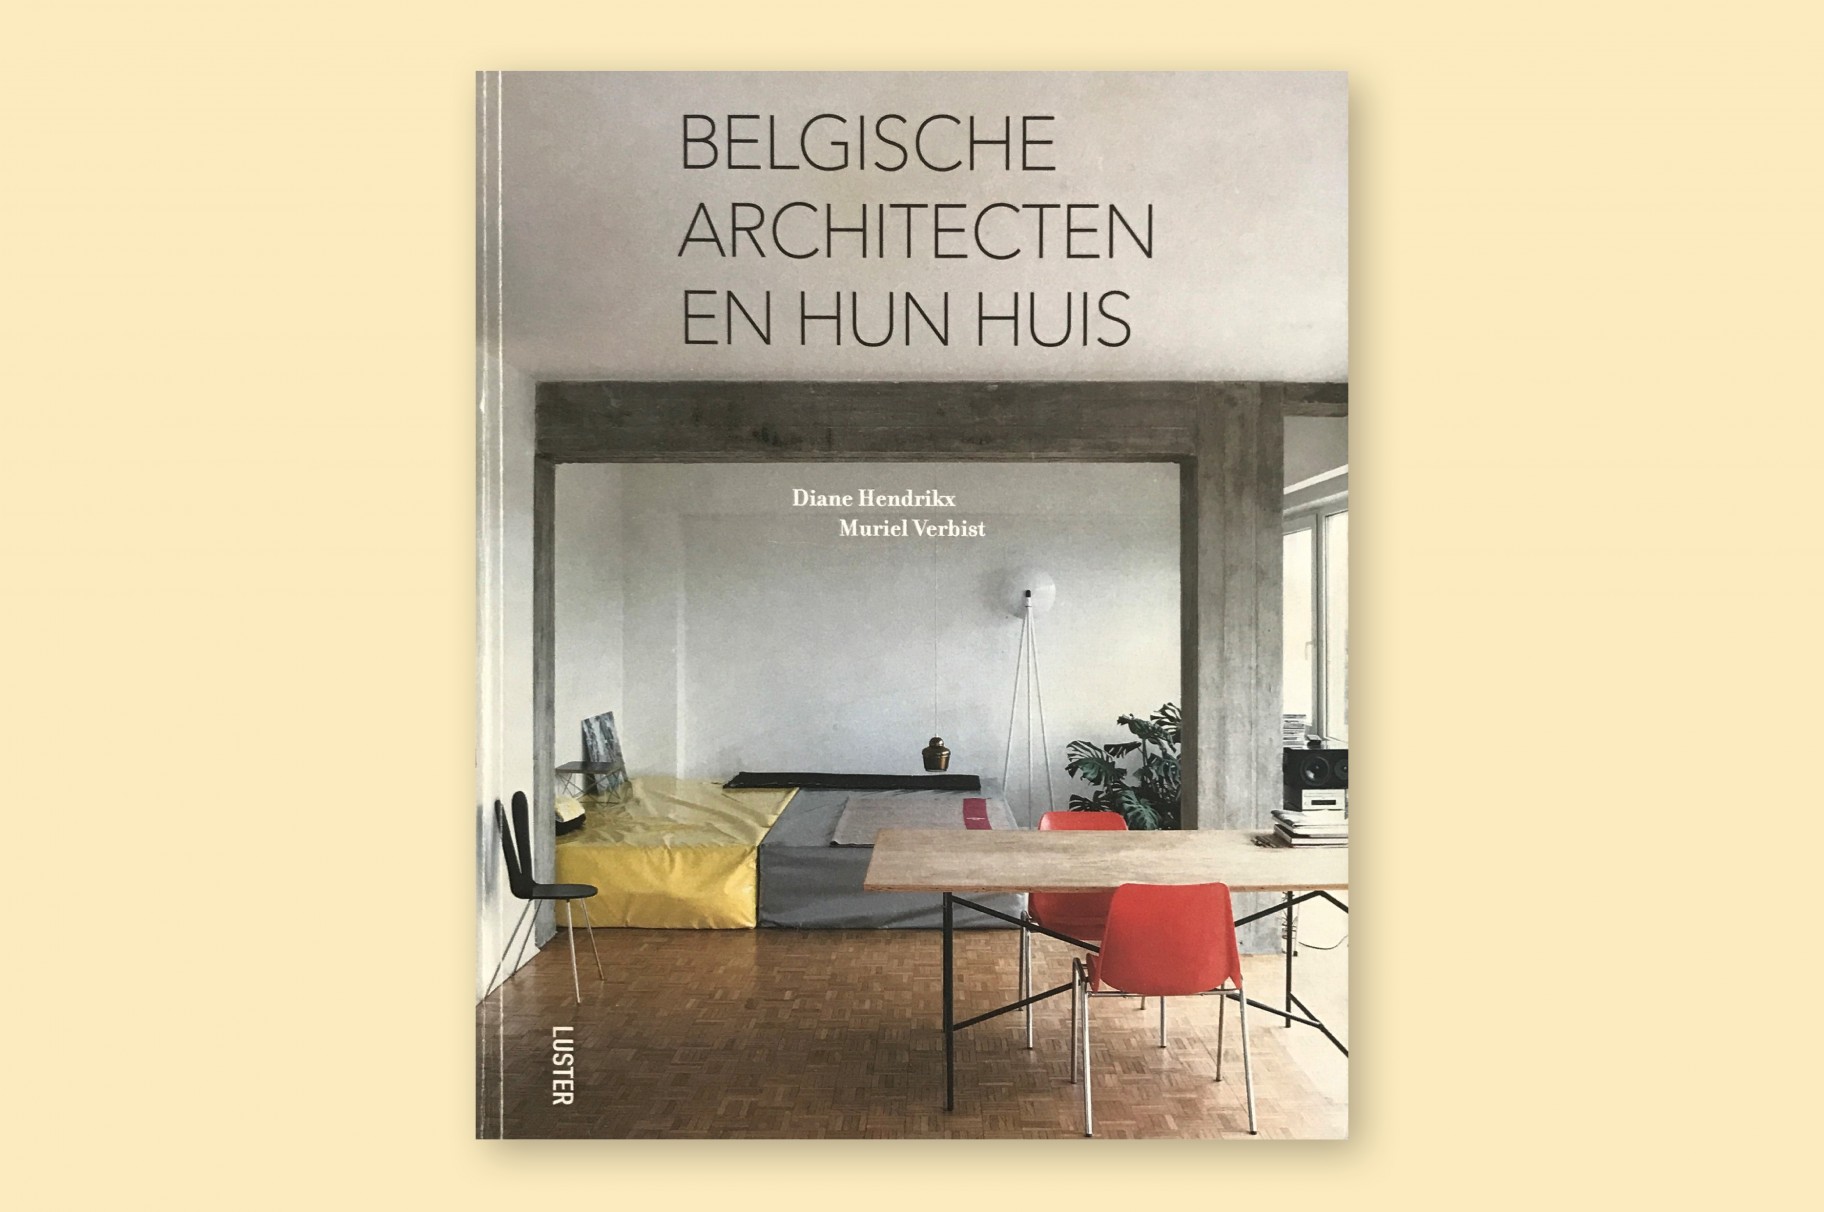 Woning Deboutte in boek Belgische architecten en hun huis